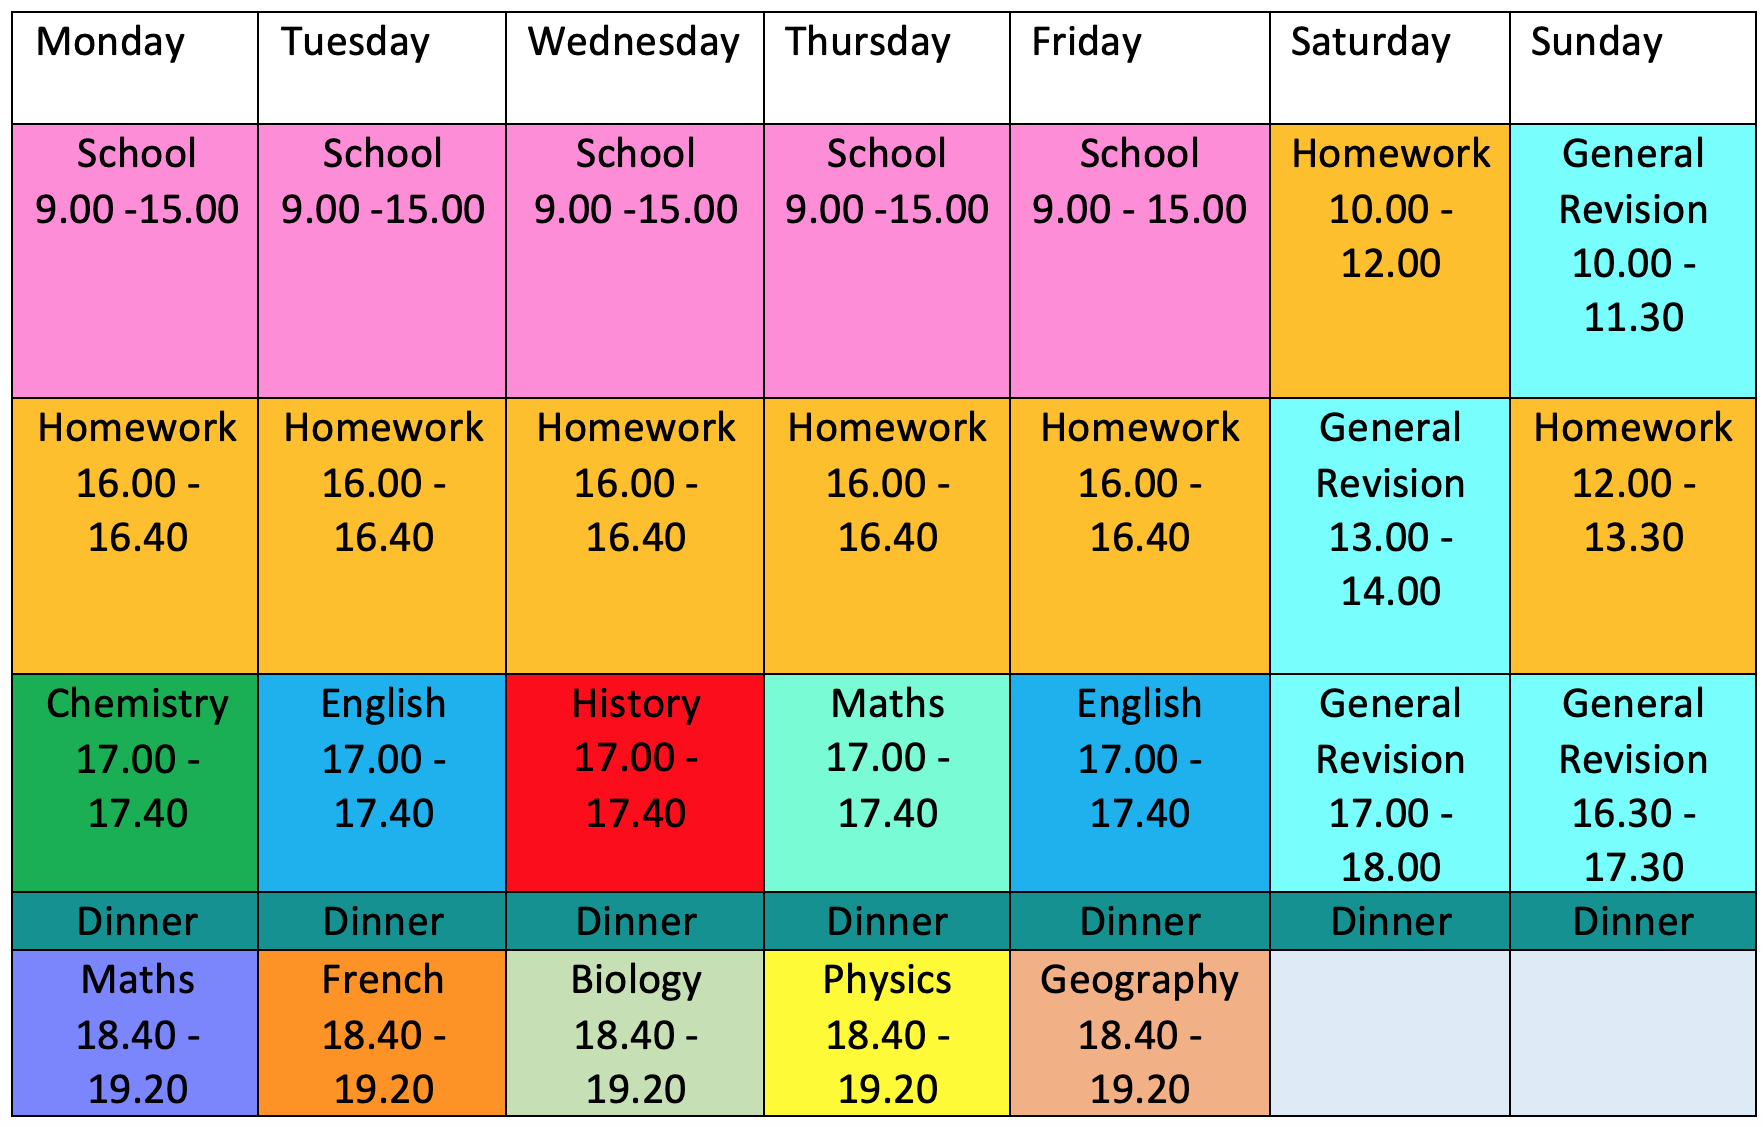 gcse-revision-timetable-gcse-revision-timetable-revision-timetable